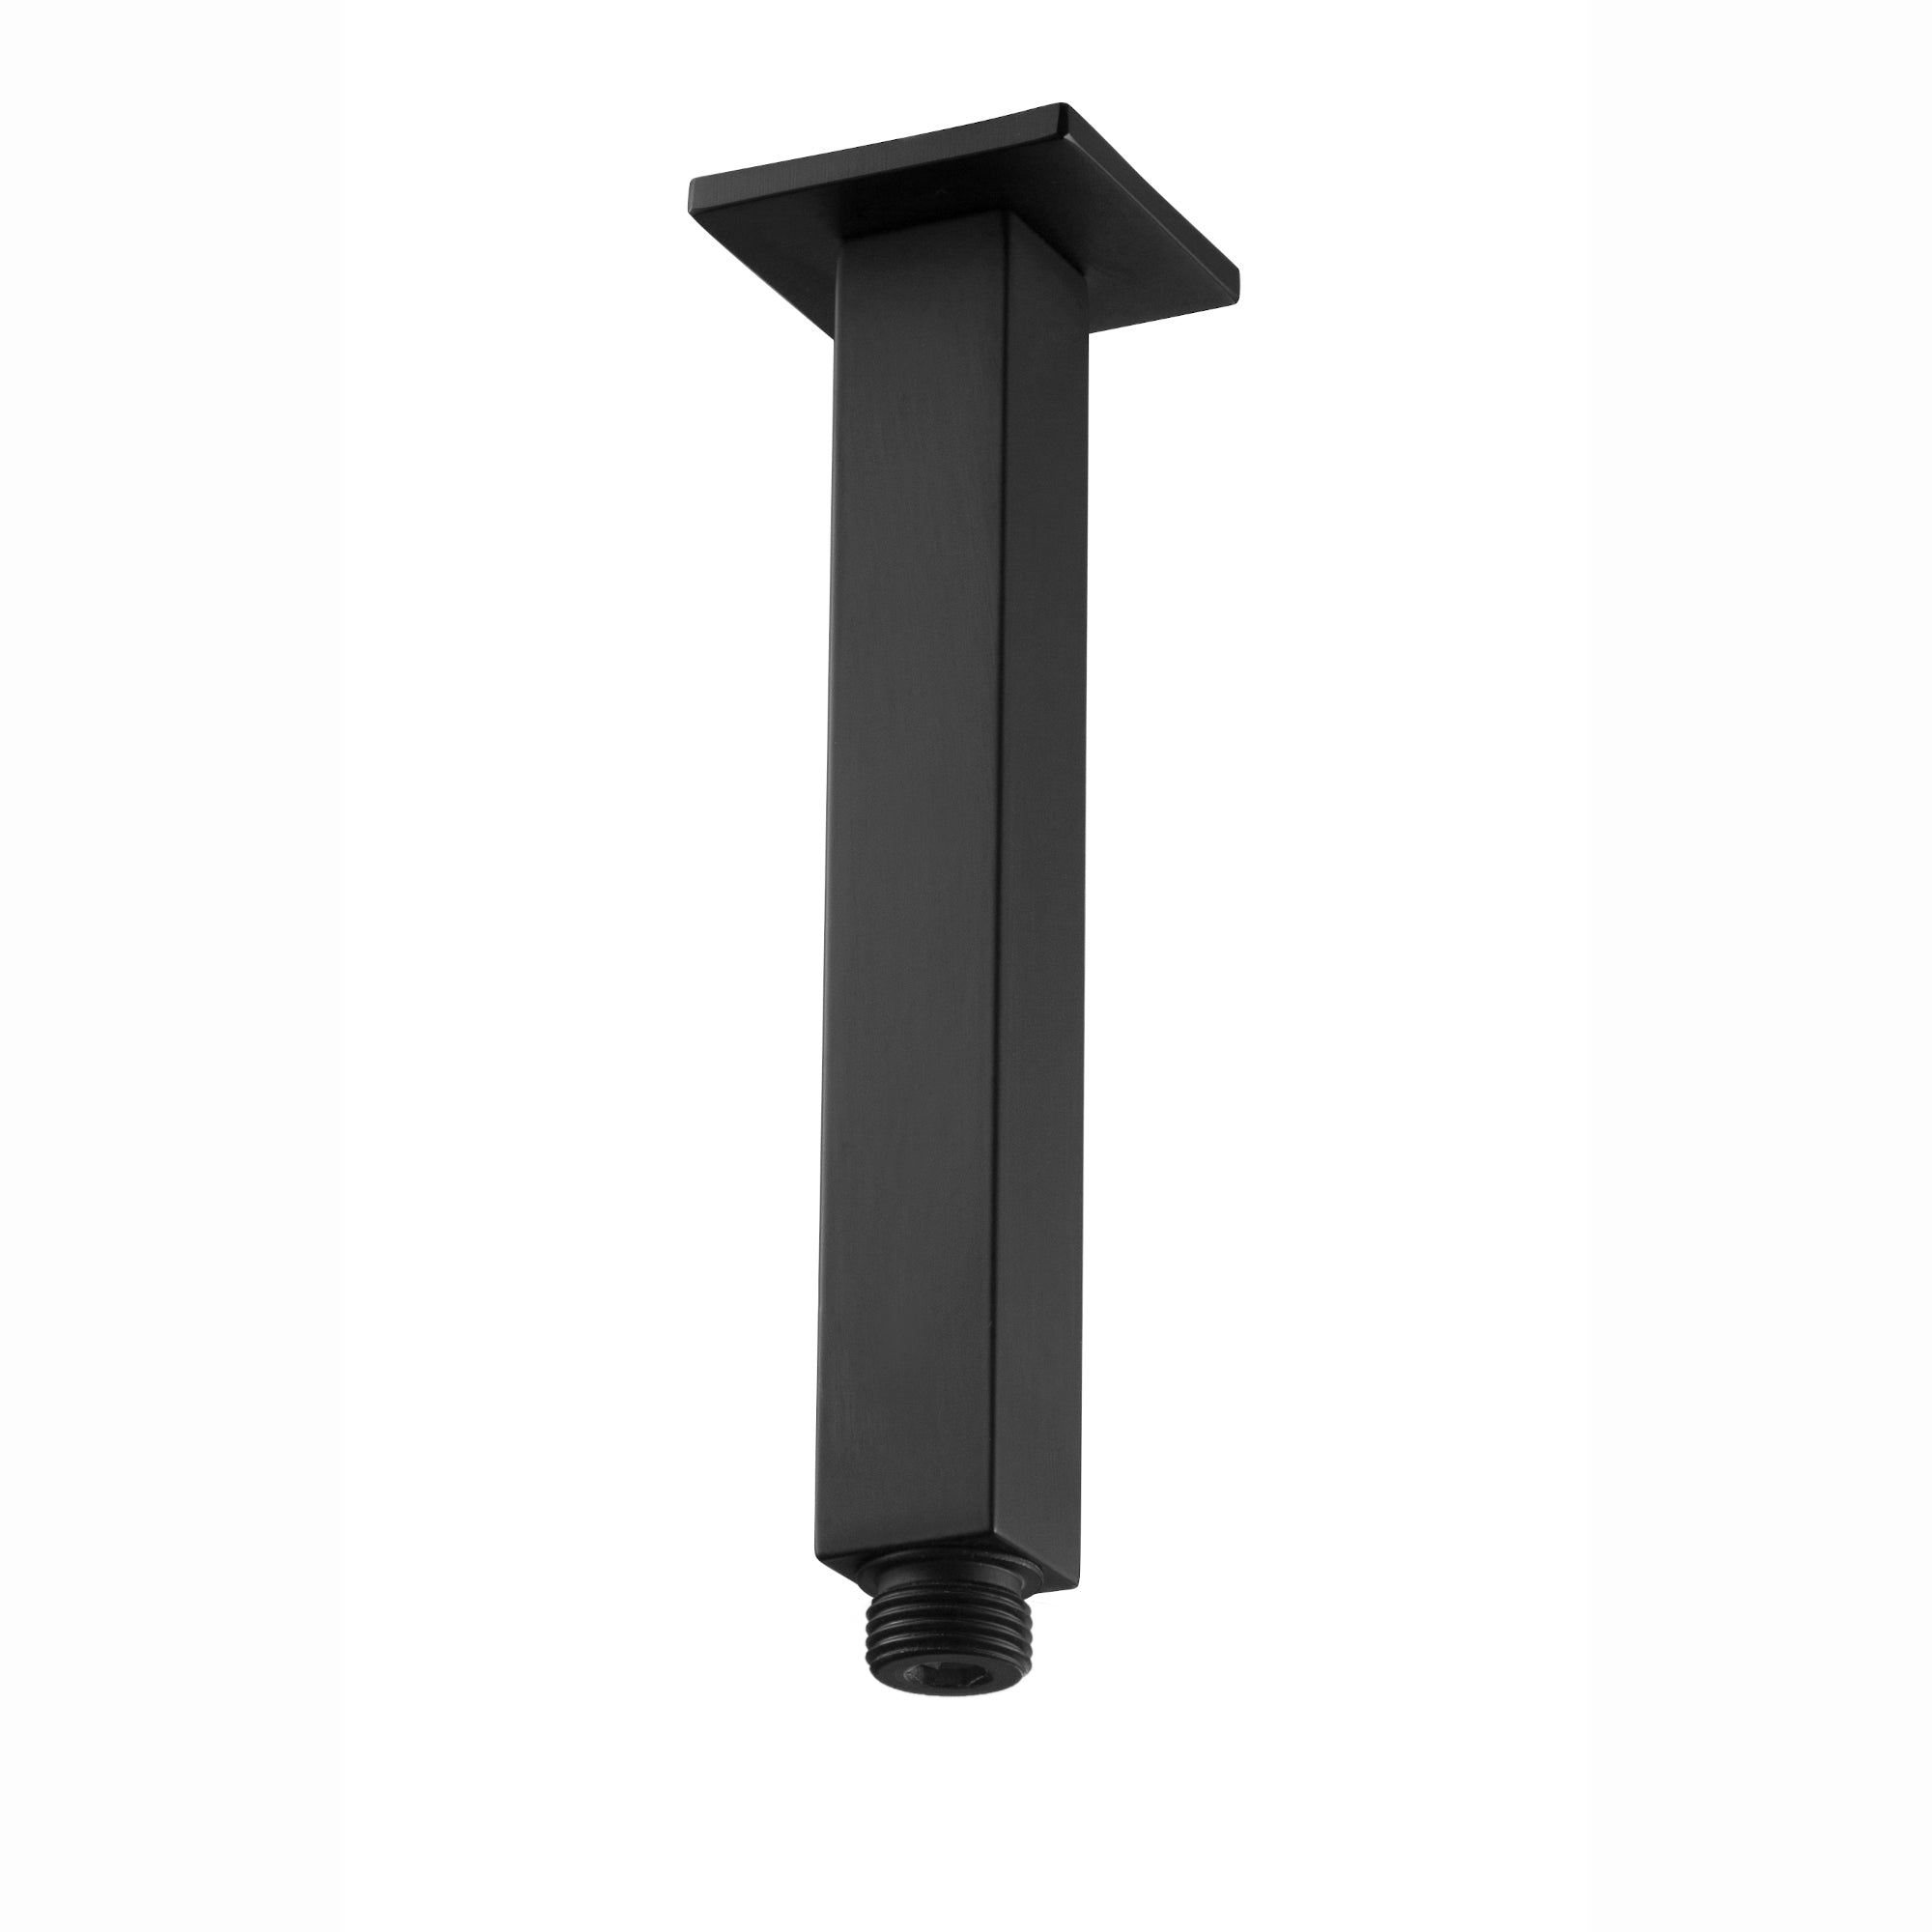 Square vertical shower arm 180mm - matte black